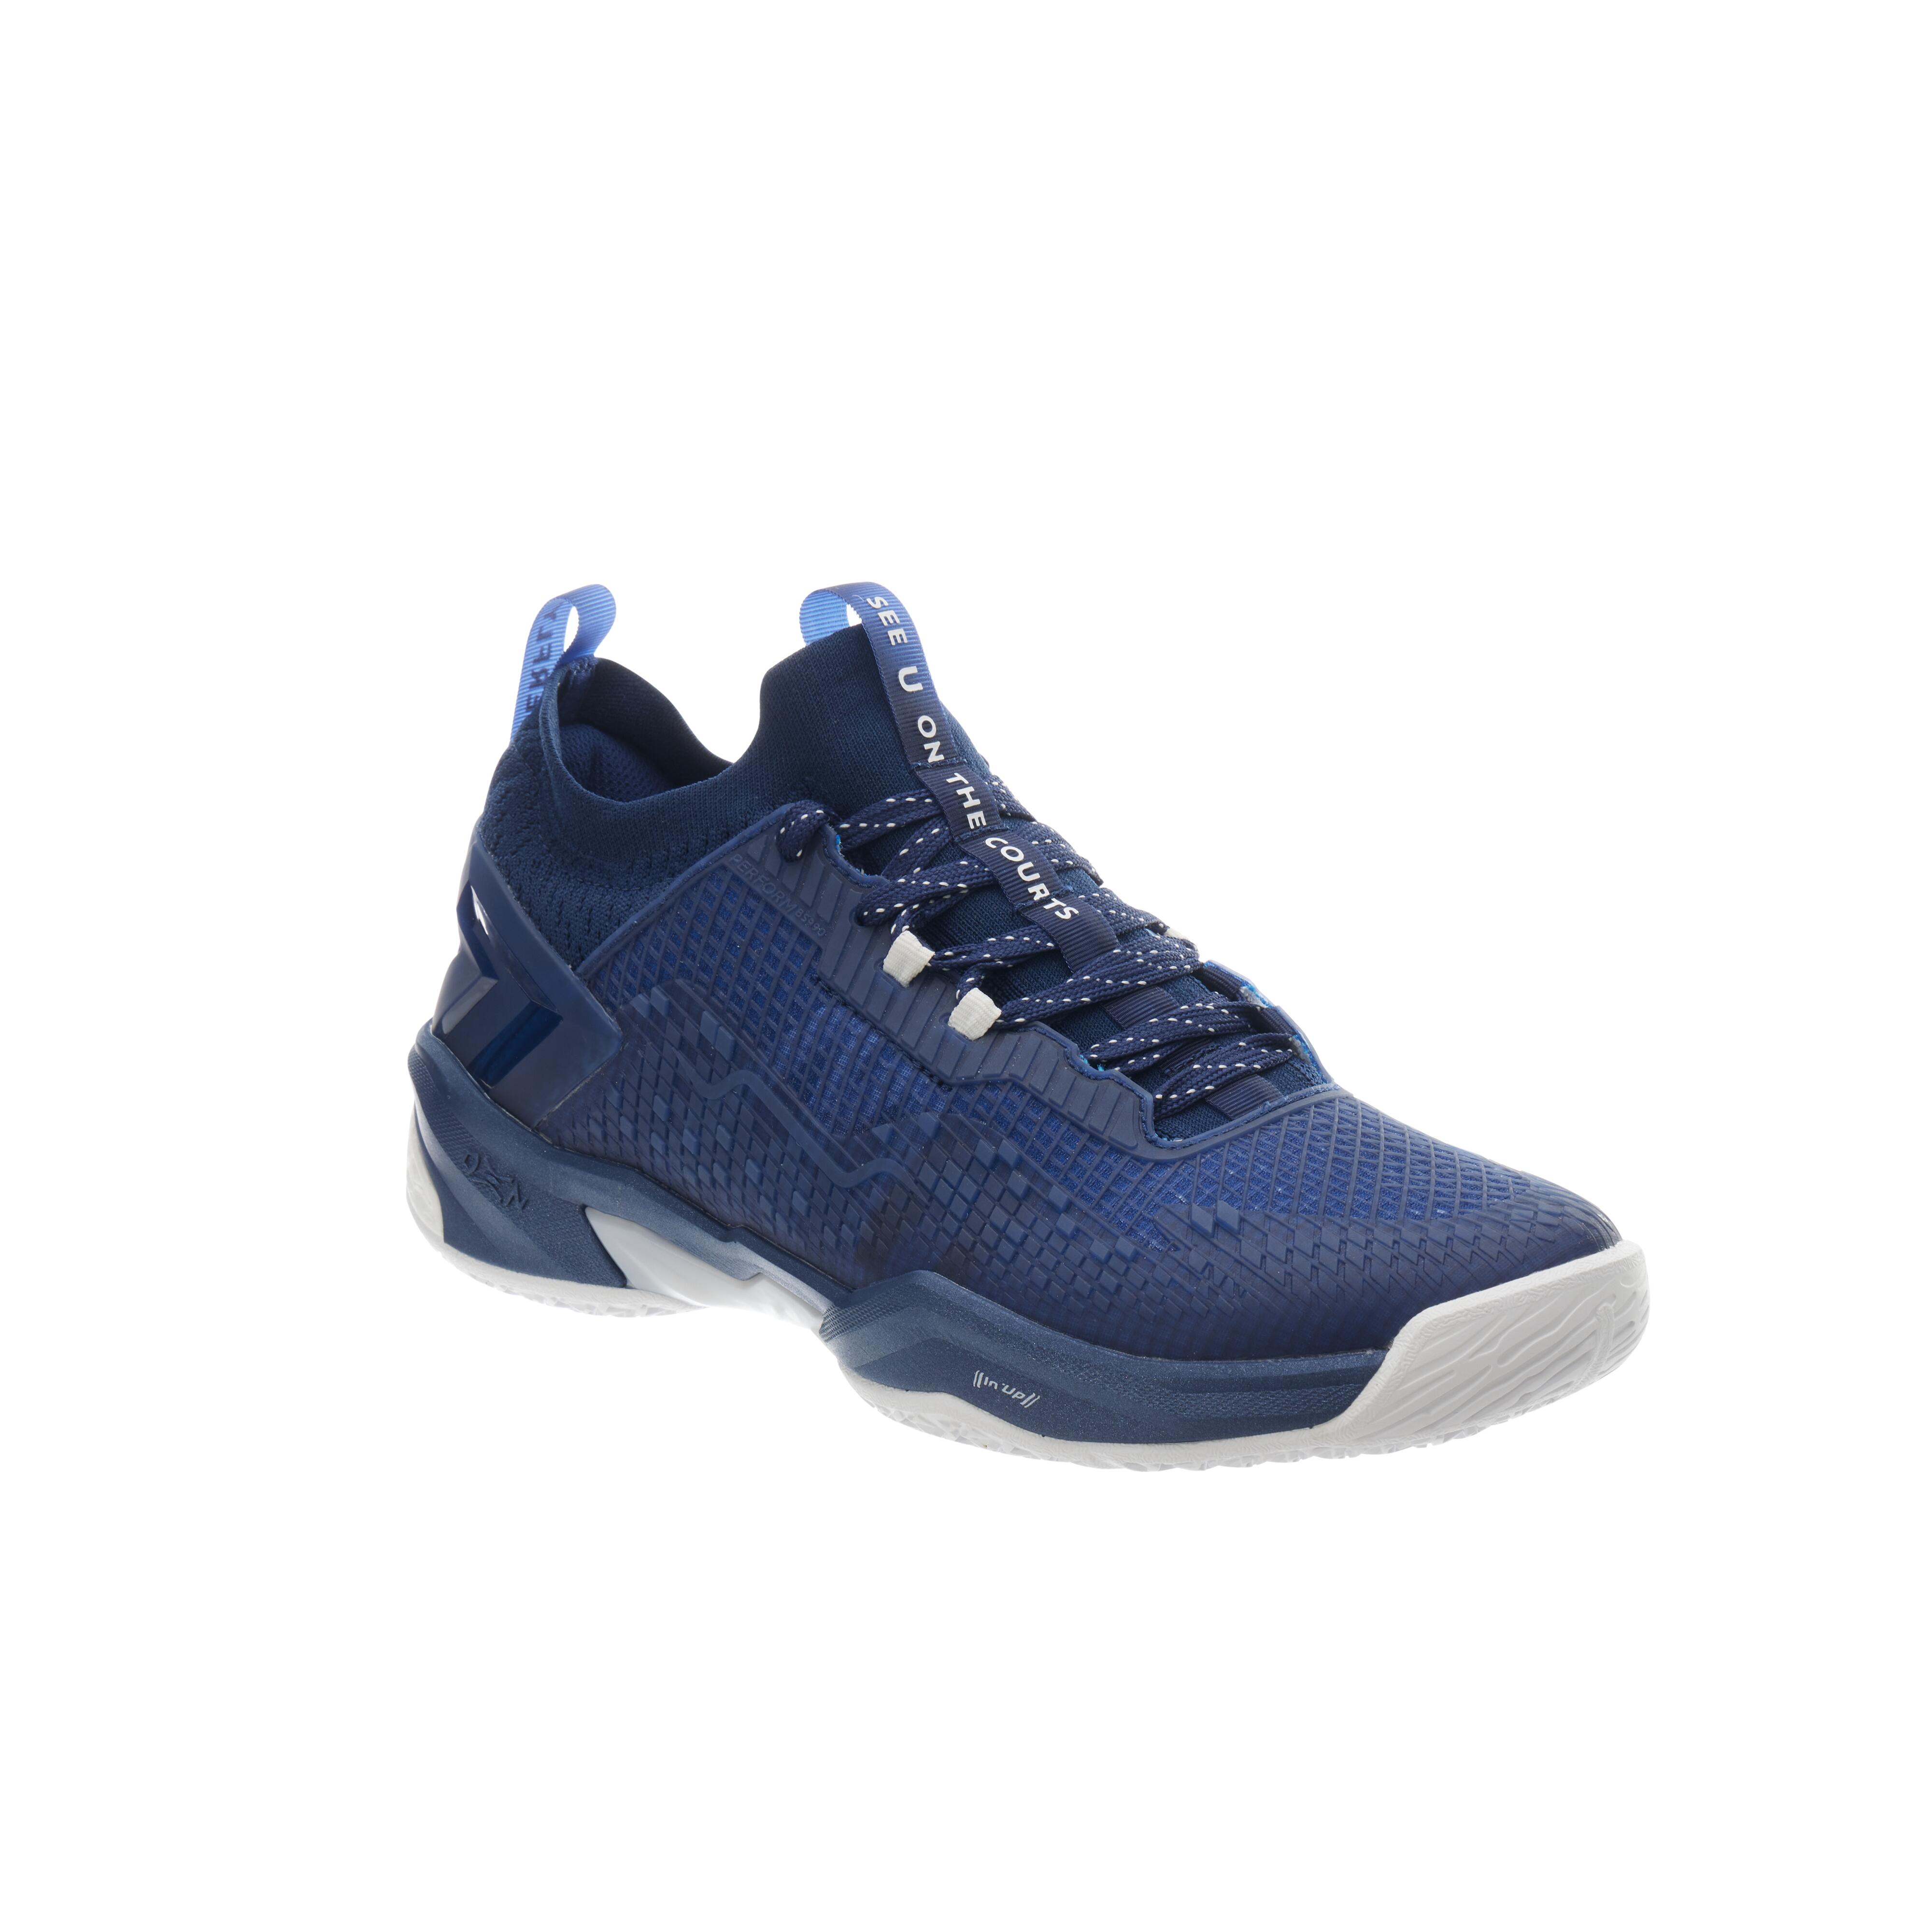 Image of Men's Badminton Shoes - BS Perform 990 Pro Blue